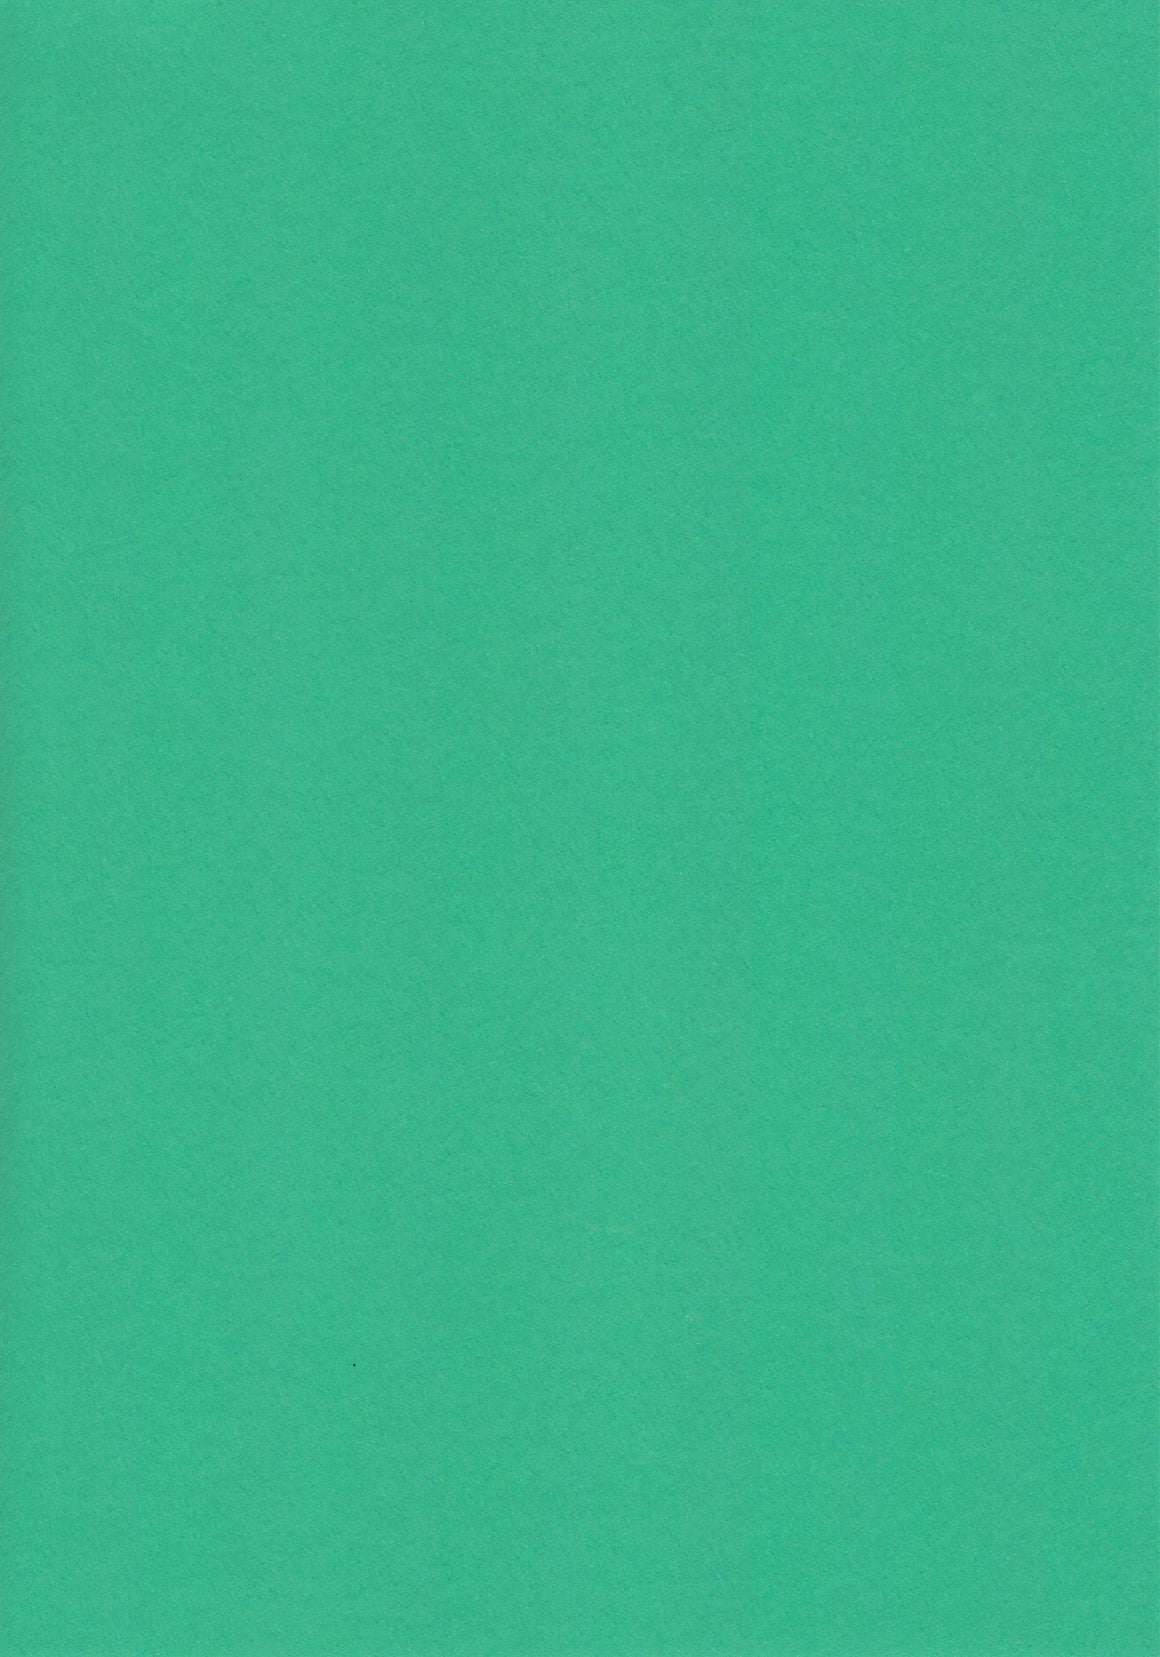 Green A4 Card